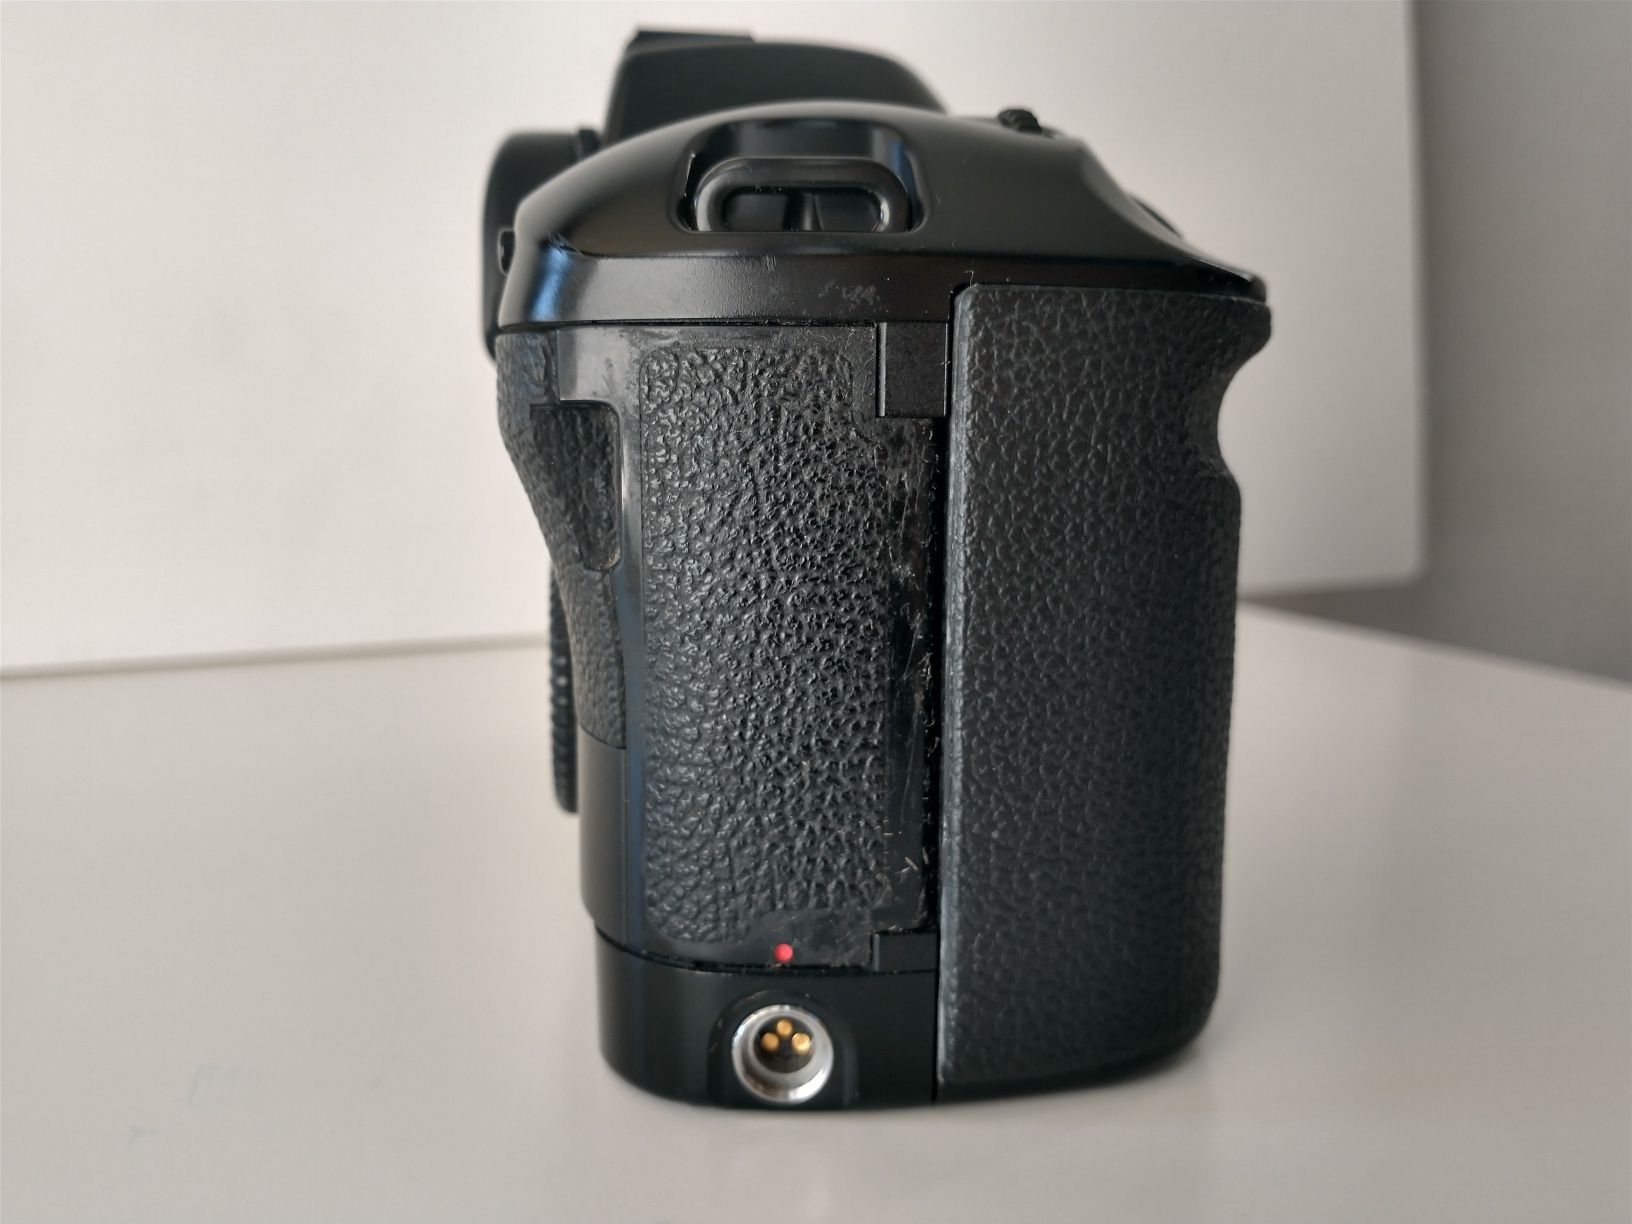 Canon eos 1n - aparat analogowy